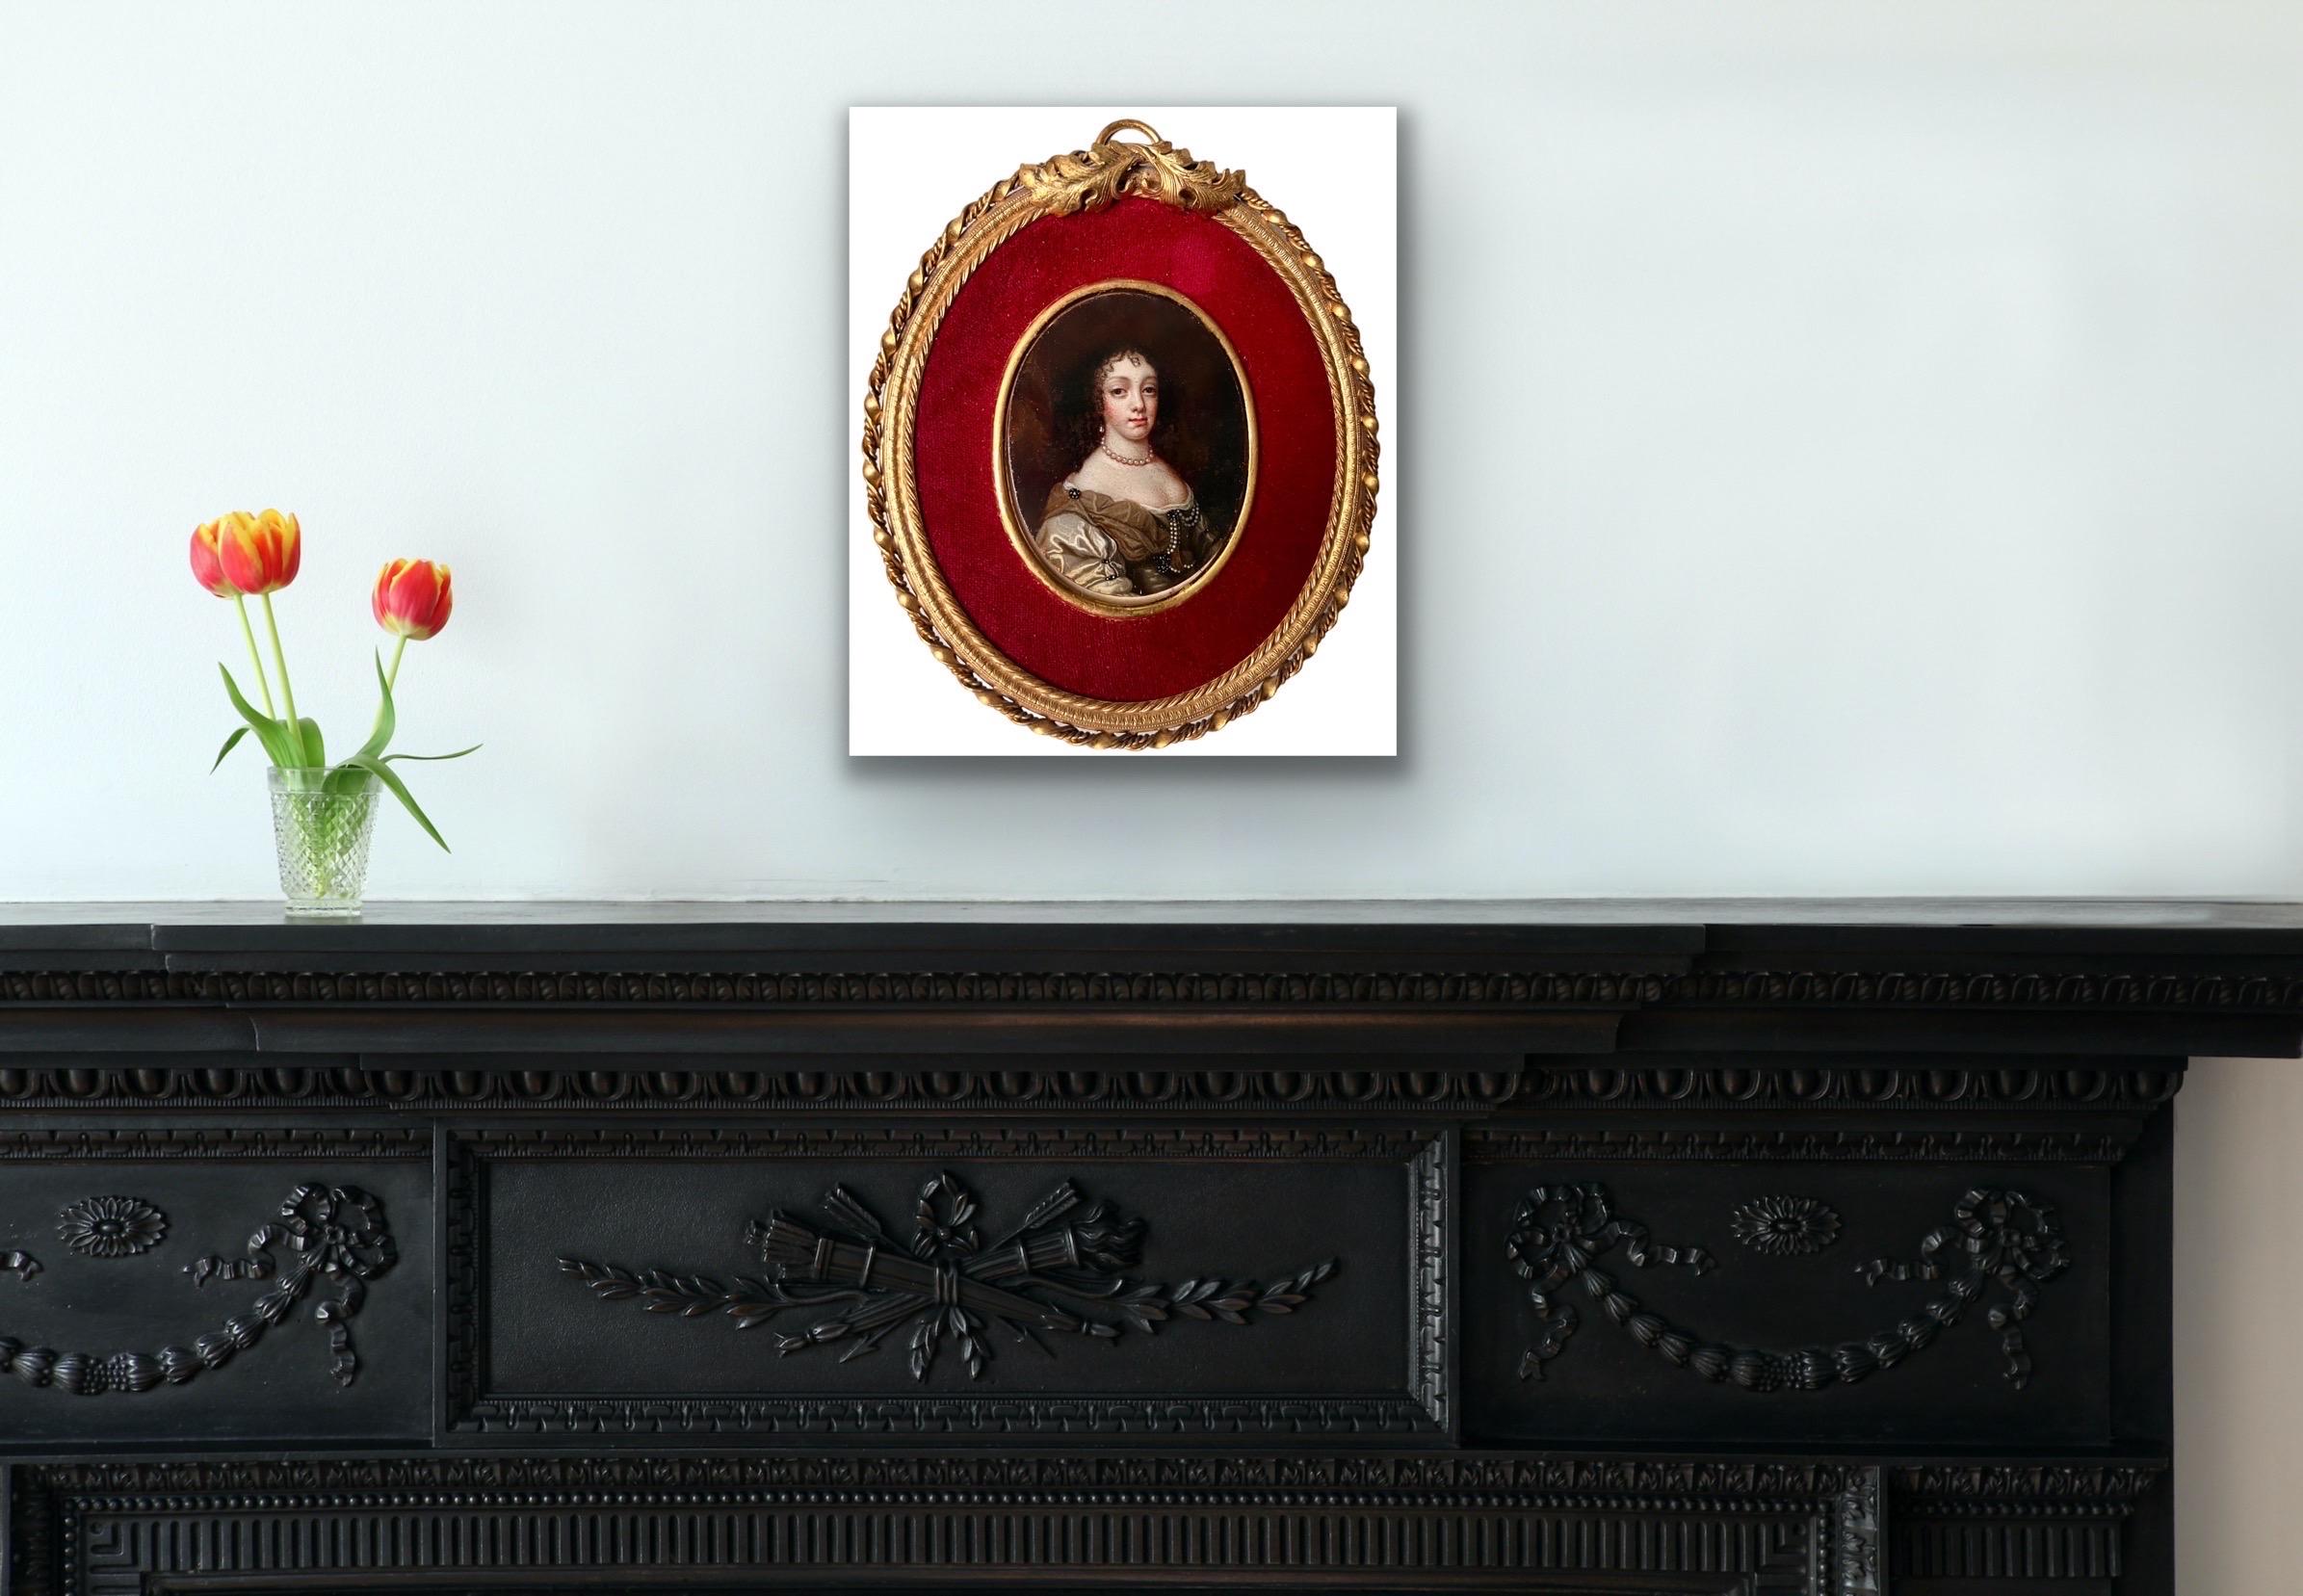 Très belle miniature de maître ancien représentant la reine Catherine de Bragance

La vie de Catherine de Bragance est un mélange fascinant d'héroïsme et de contributions précieuses. En tant que princesse portugaise ayant épousé le roi Charles II,